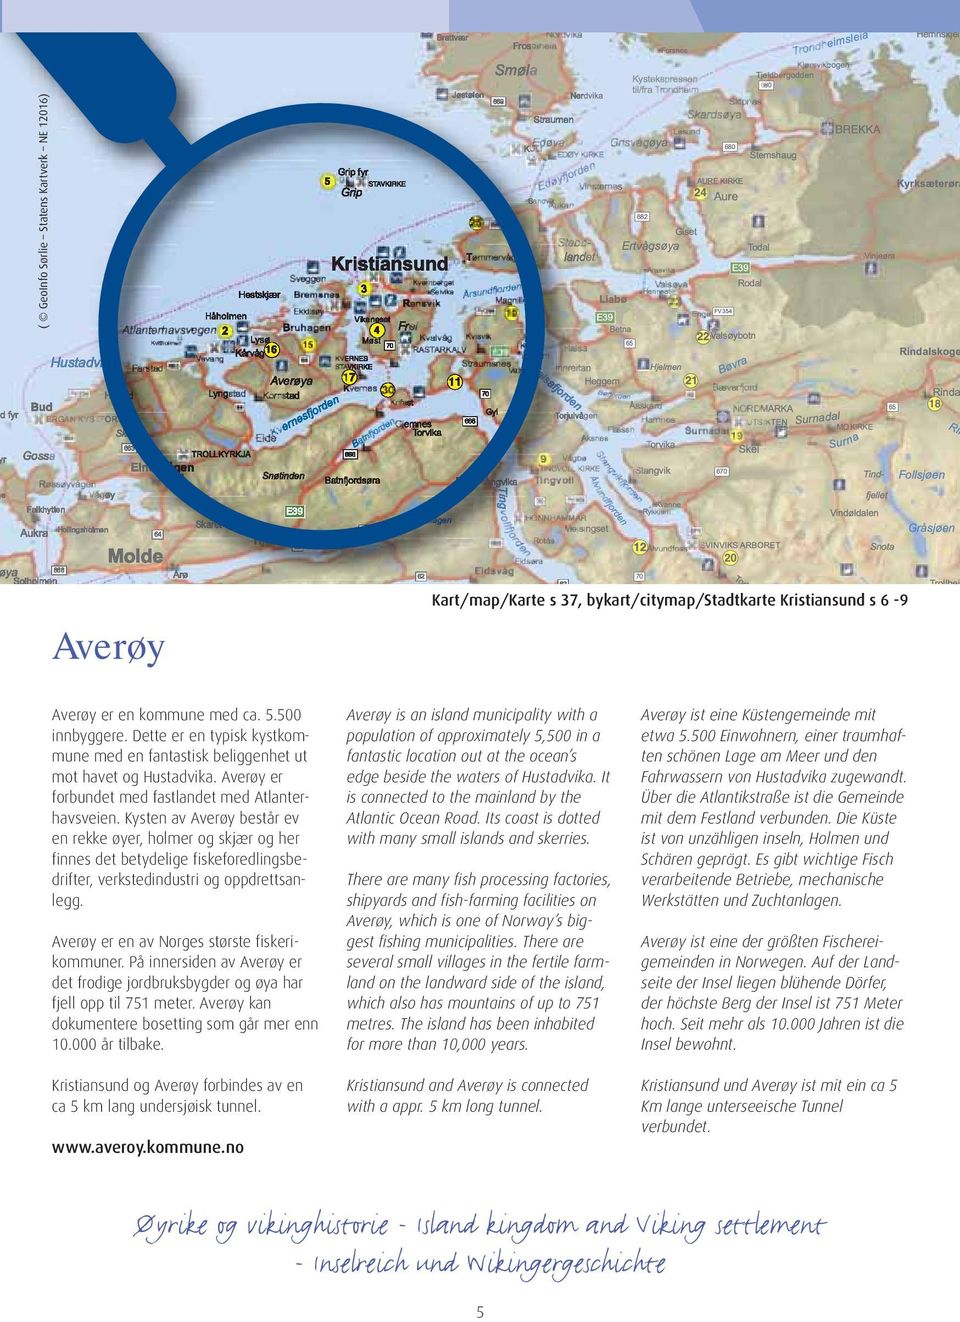 Kysten av Averøy består ev en rekke øyer, holmer og skjær og her finnes det betydelige fiskeforedlingsbedrifter, verkstedindustri og oppdrettsanlegg.